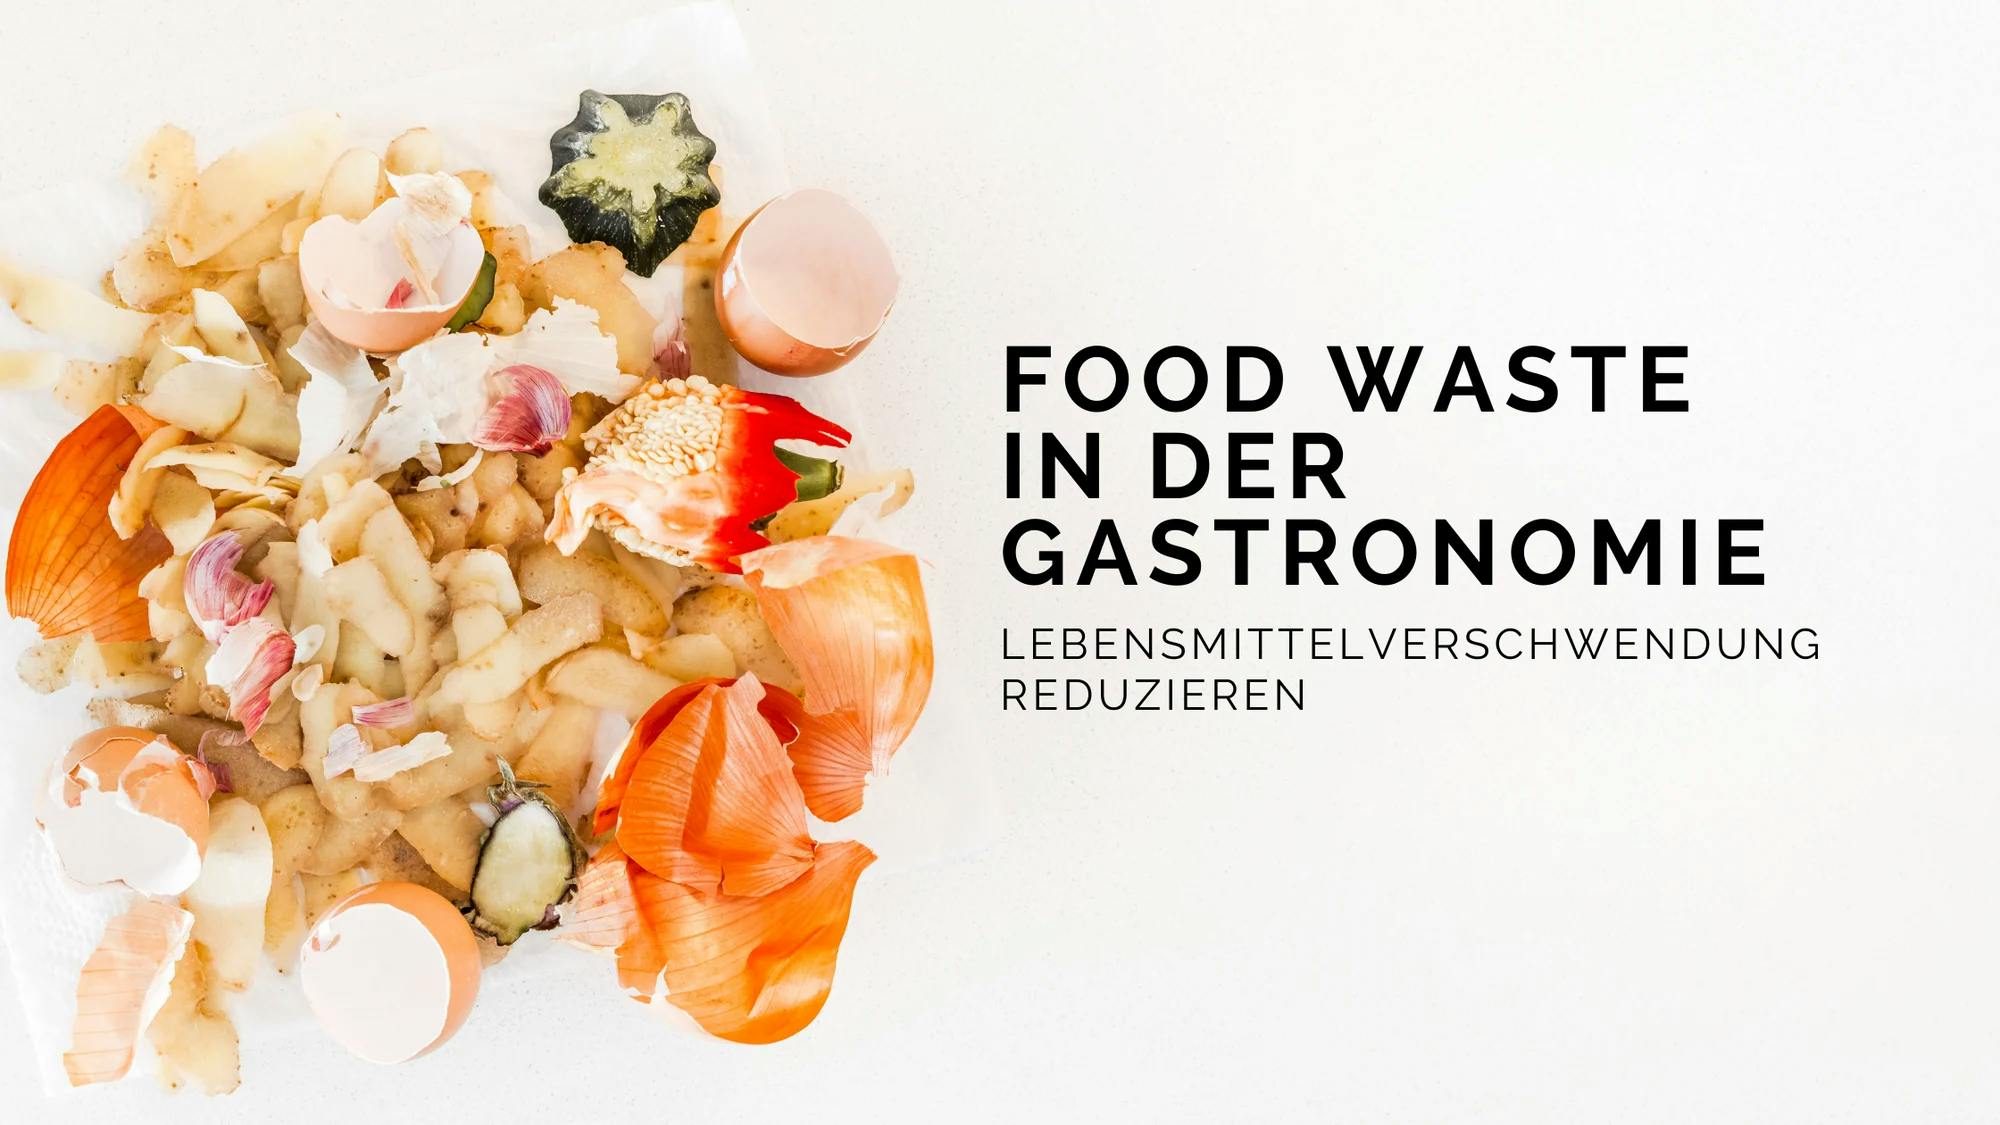 Food Waste in der Gastronomie: Lebensmittelverschwendung reduzieren